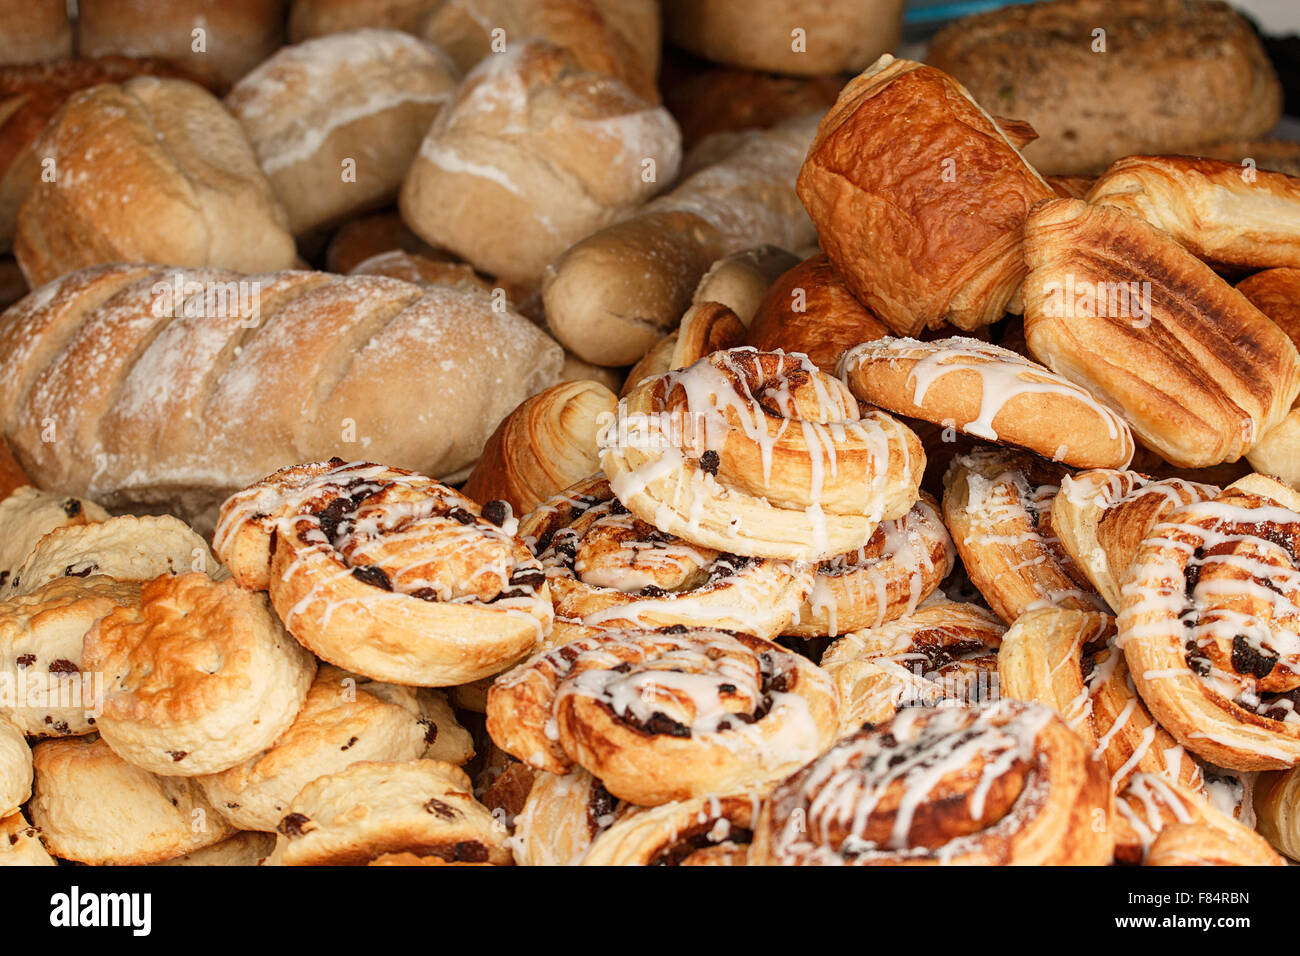 Selezione di prodotti da forno disponibili da fornai specializzati compresi panini e focaccine; pain au chocolate; dolore; cobbs e altri brea Foto Stock